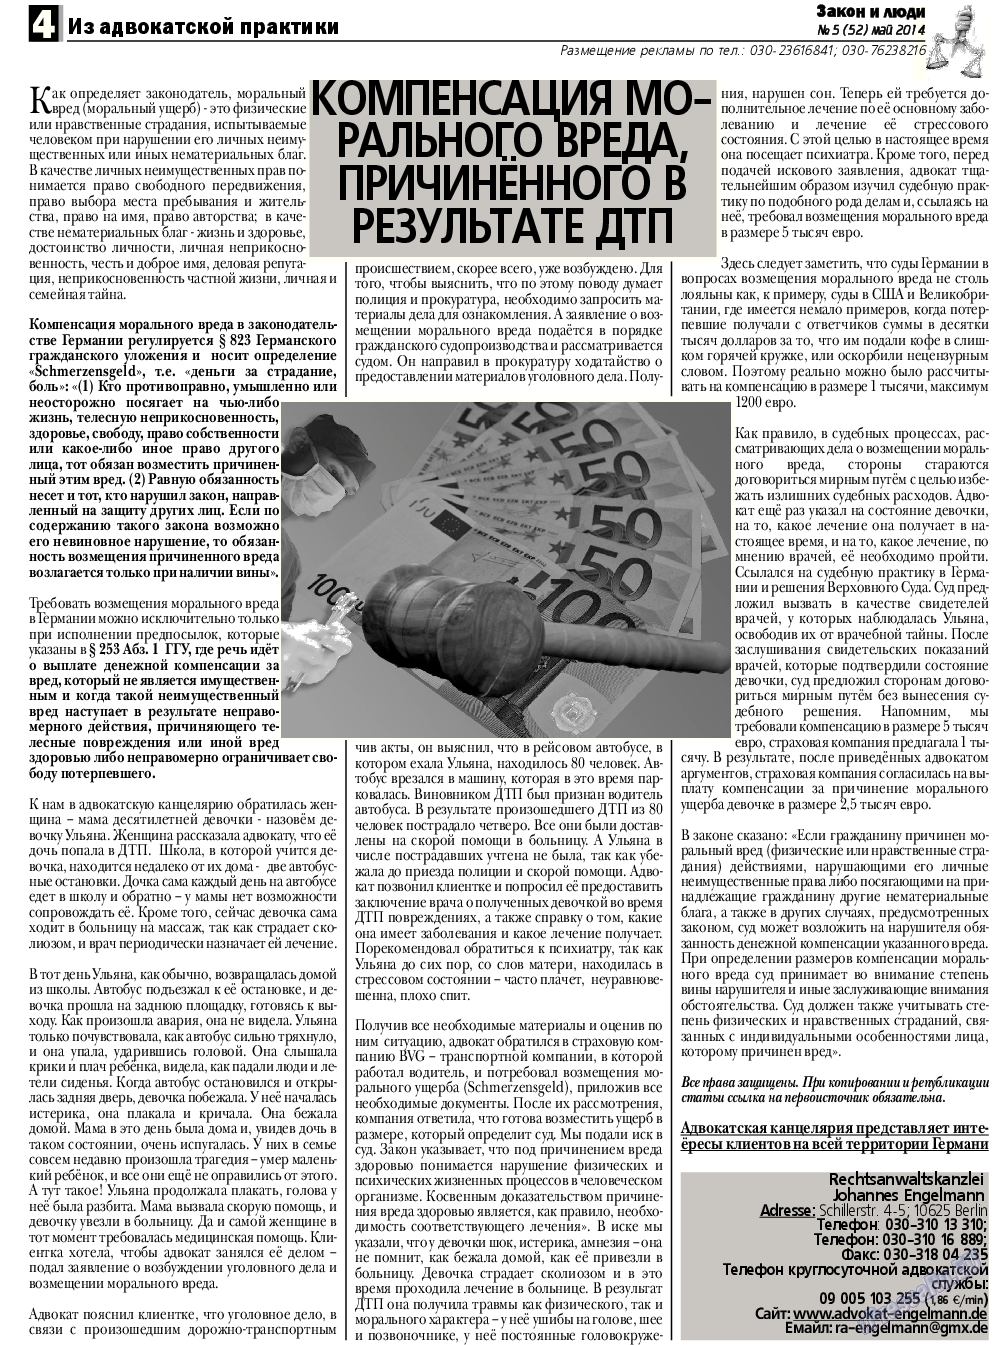 Закон и люди, газета. 2014 №5 стр.4